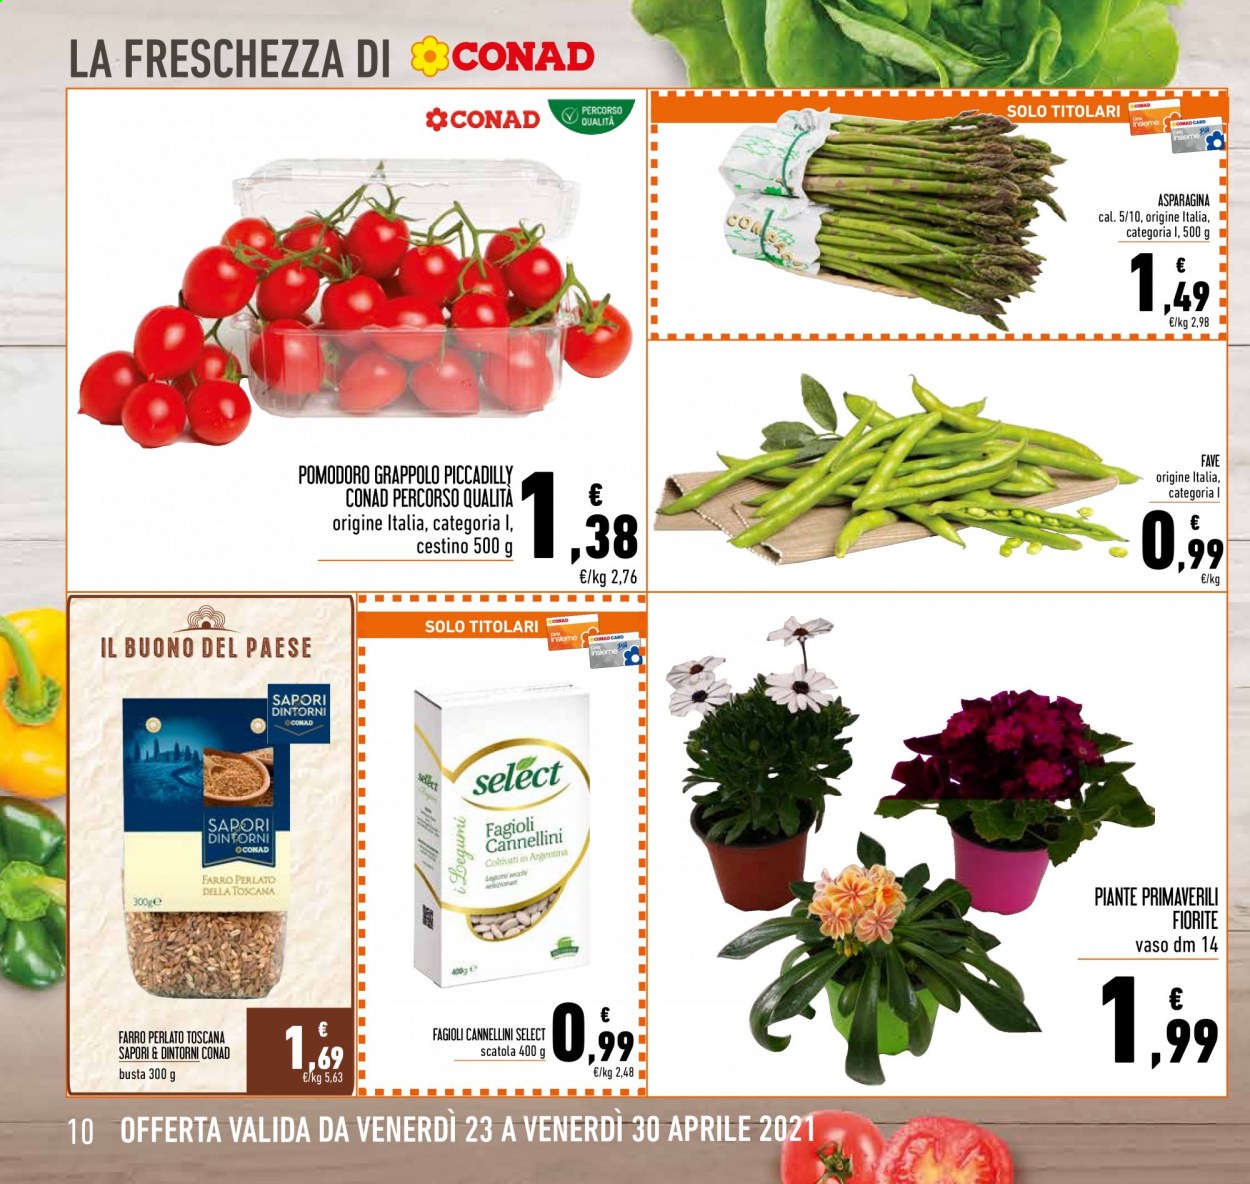 thumbnail - Volantino Conad - 23/4/2021 - 30/4/2021 - Prodotti in offerta - fave, pomodori, fagioli, fagioli cannellini, farro perlato, farro, vaso. Pagina 10.